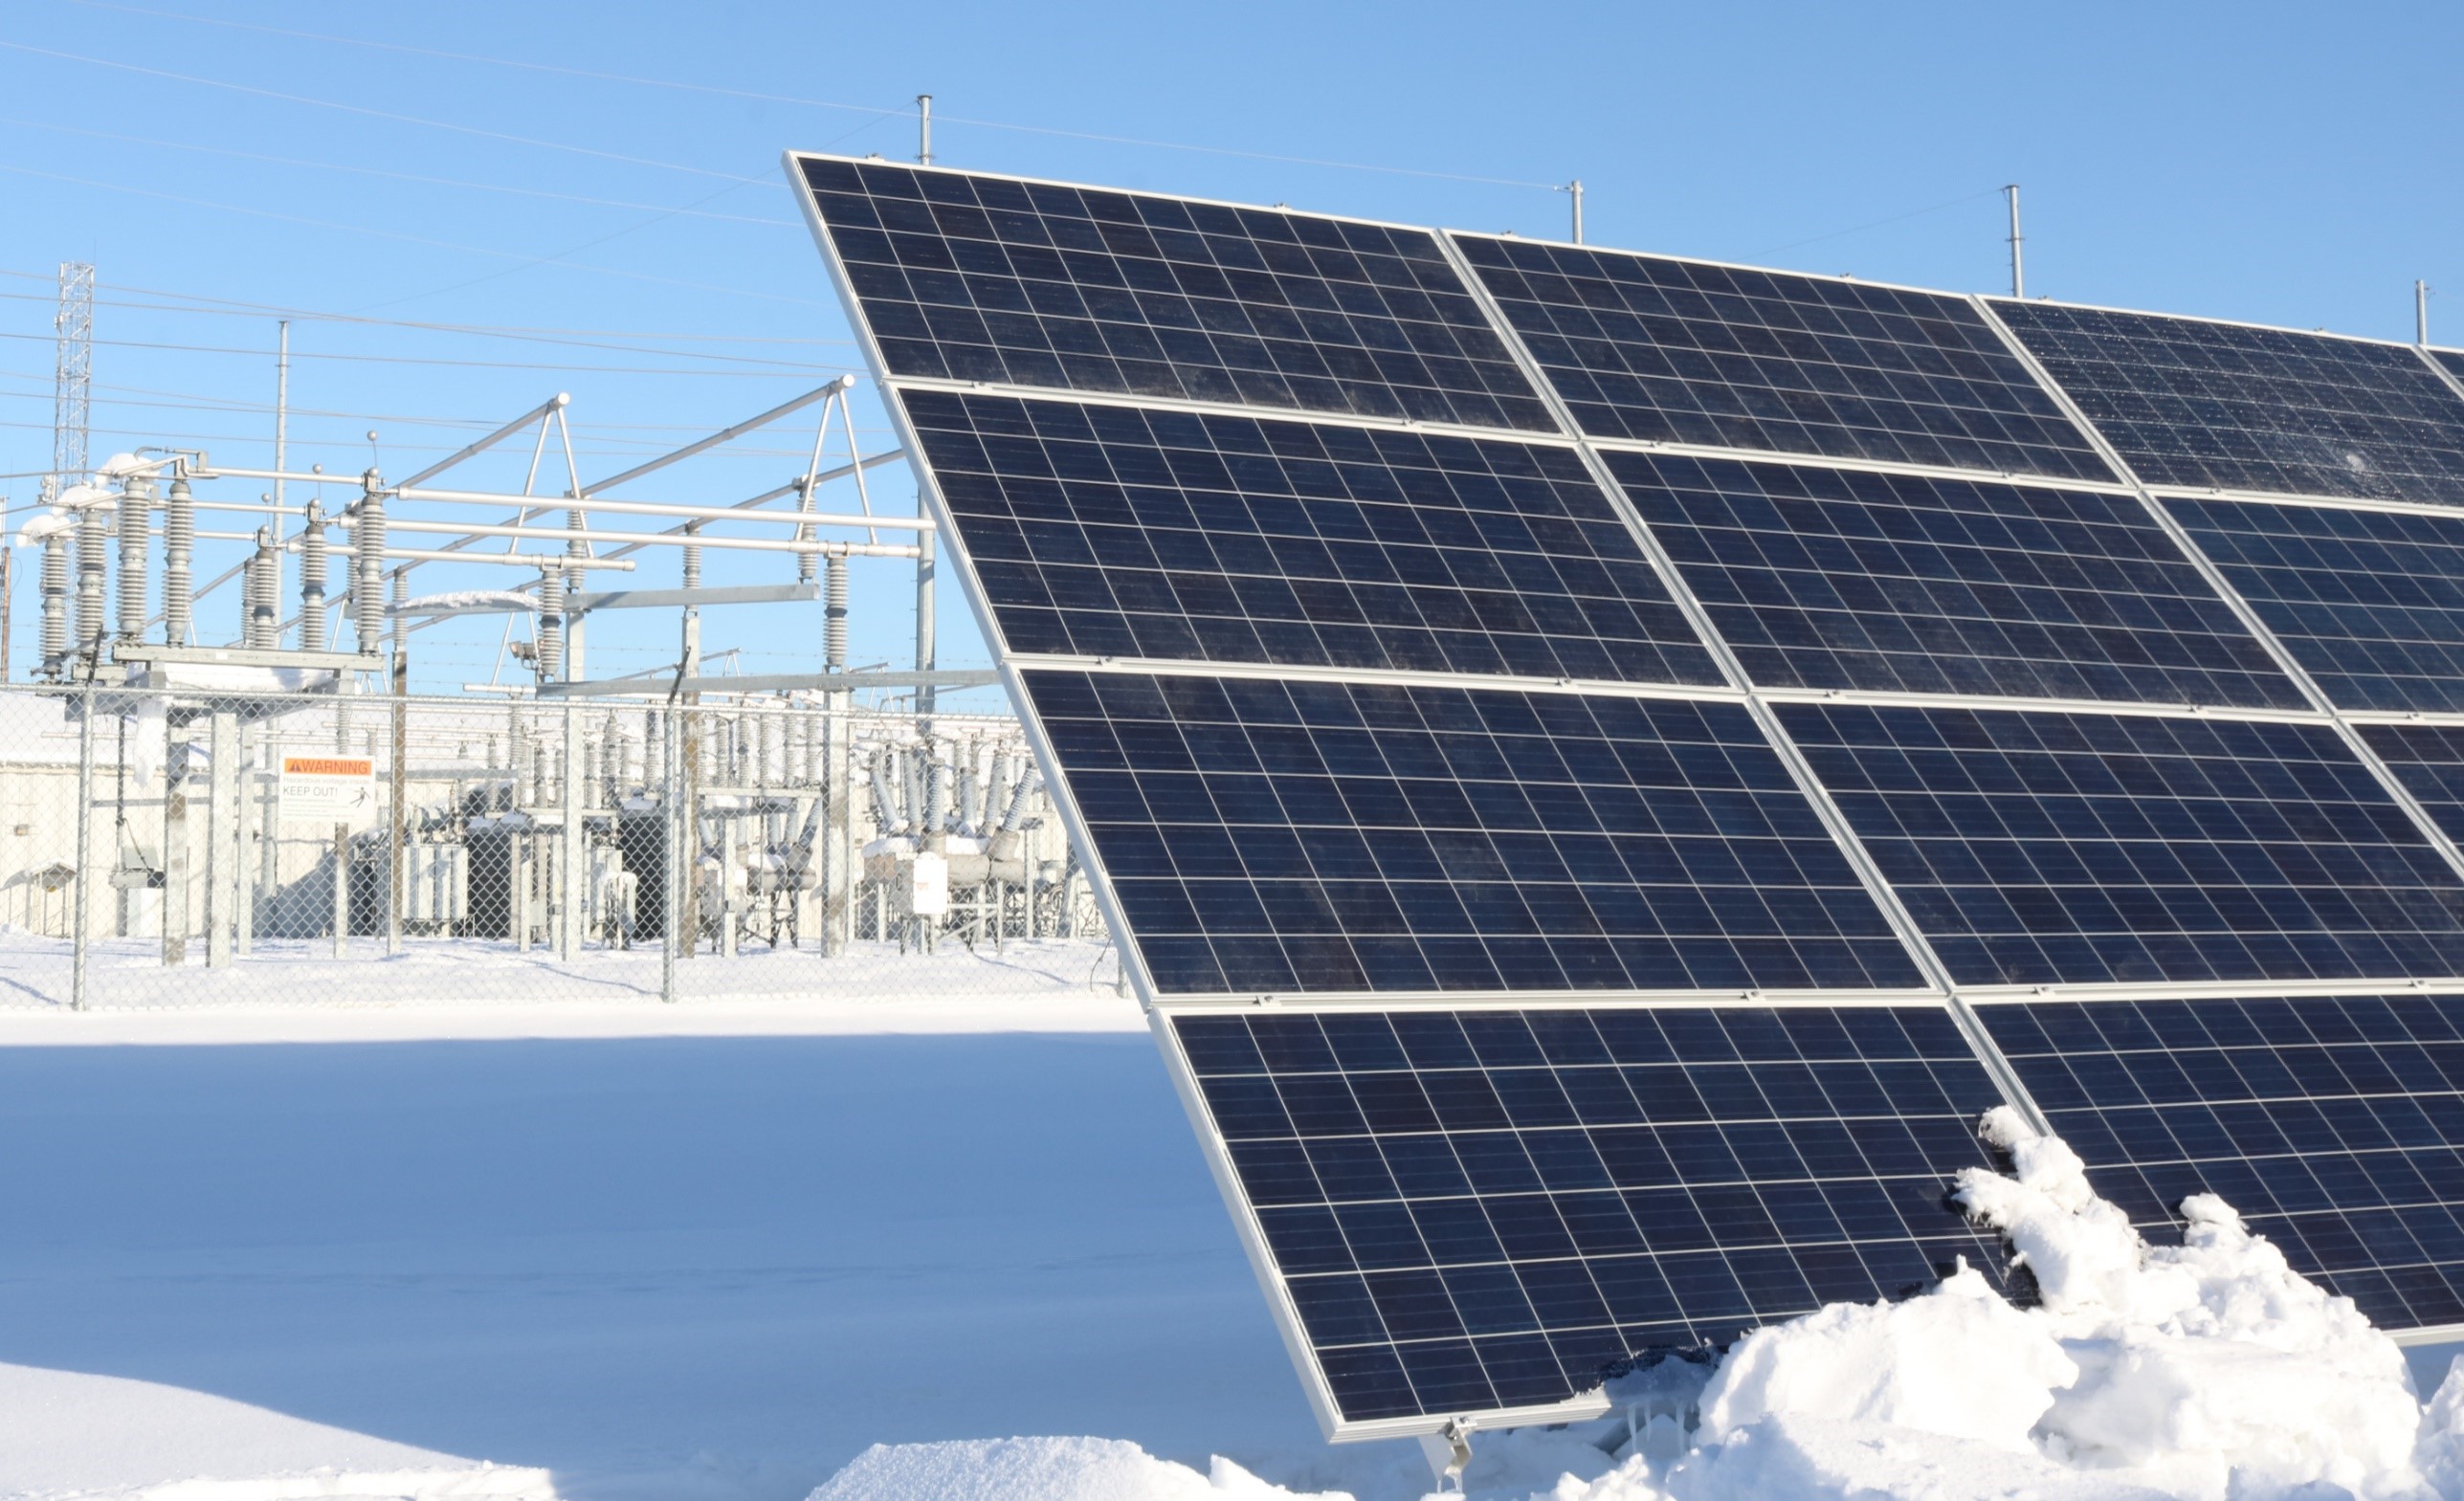 Solarize Fairbanks Deadline Jan. 30